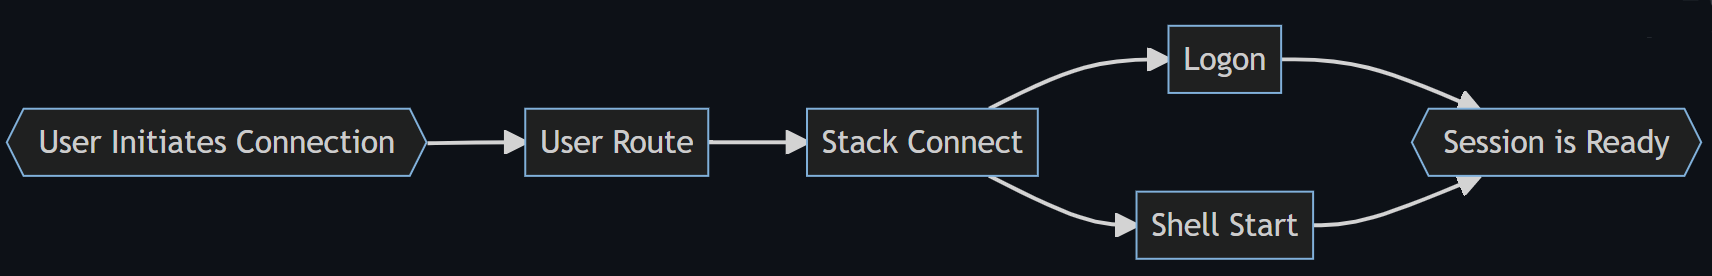 Vývojový diagram zobrazující čtyři fáze procesu přihlášení: Trasa uživatele, Stack Connected, Logon a Shell Start to Shell Ready.